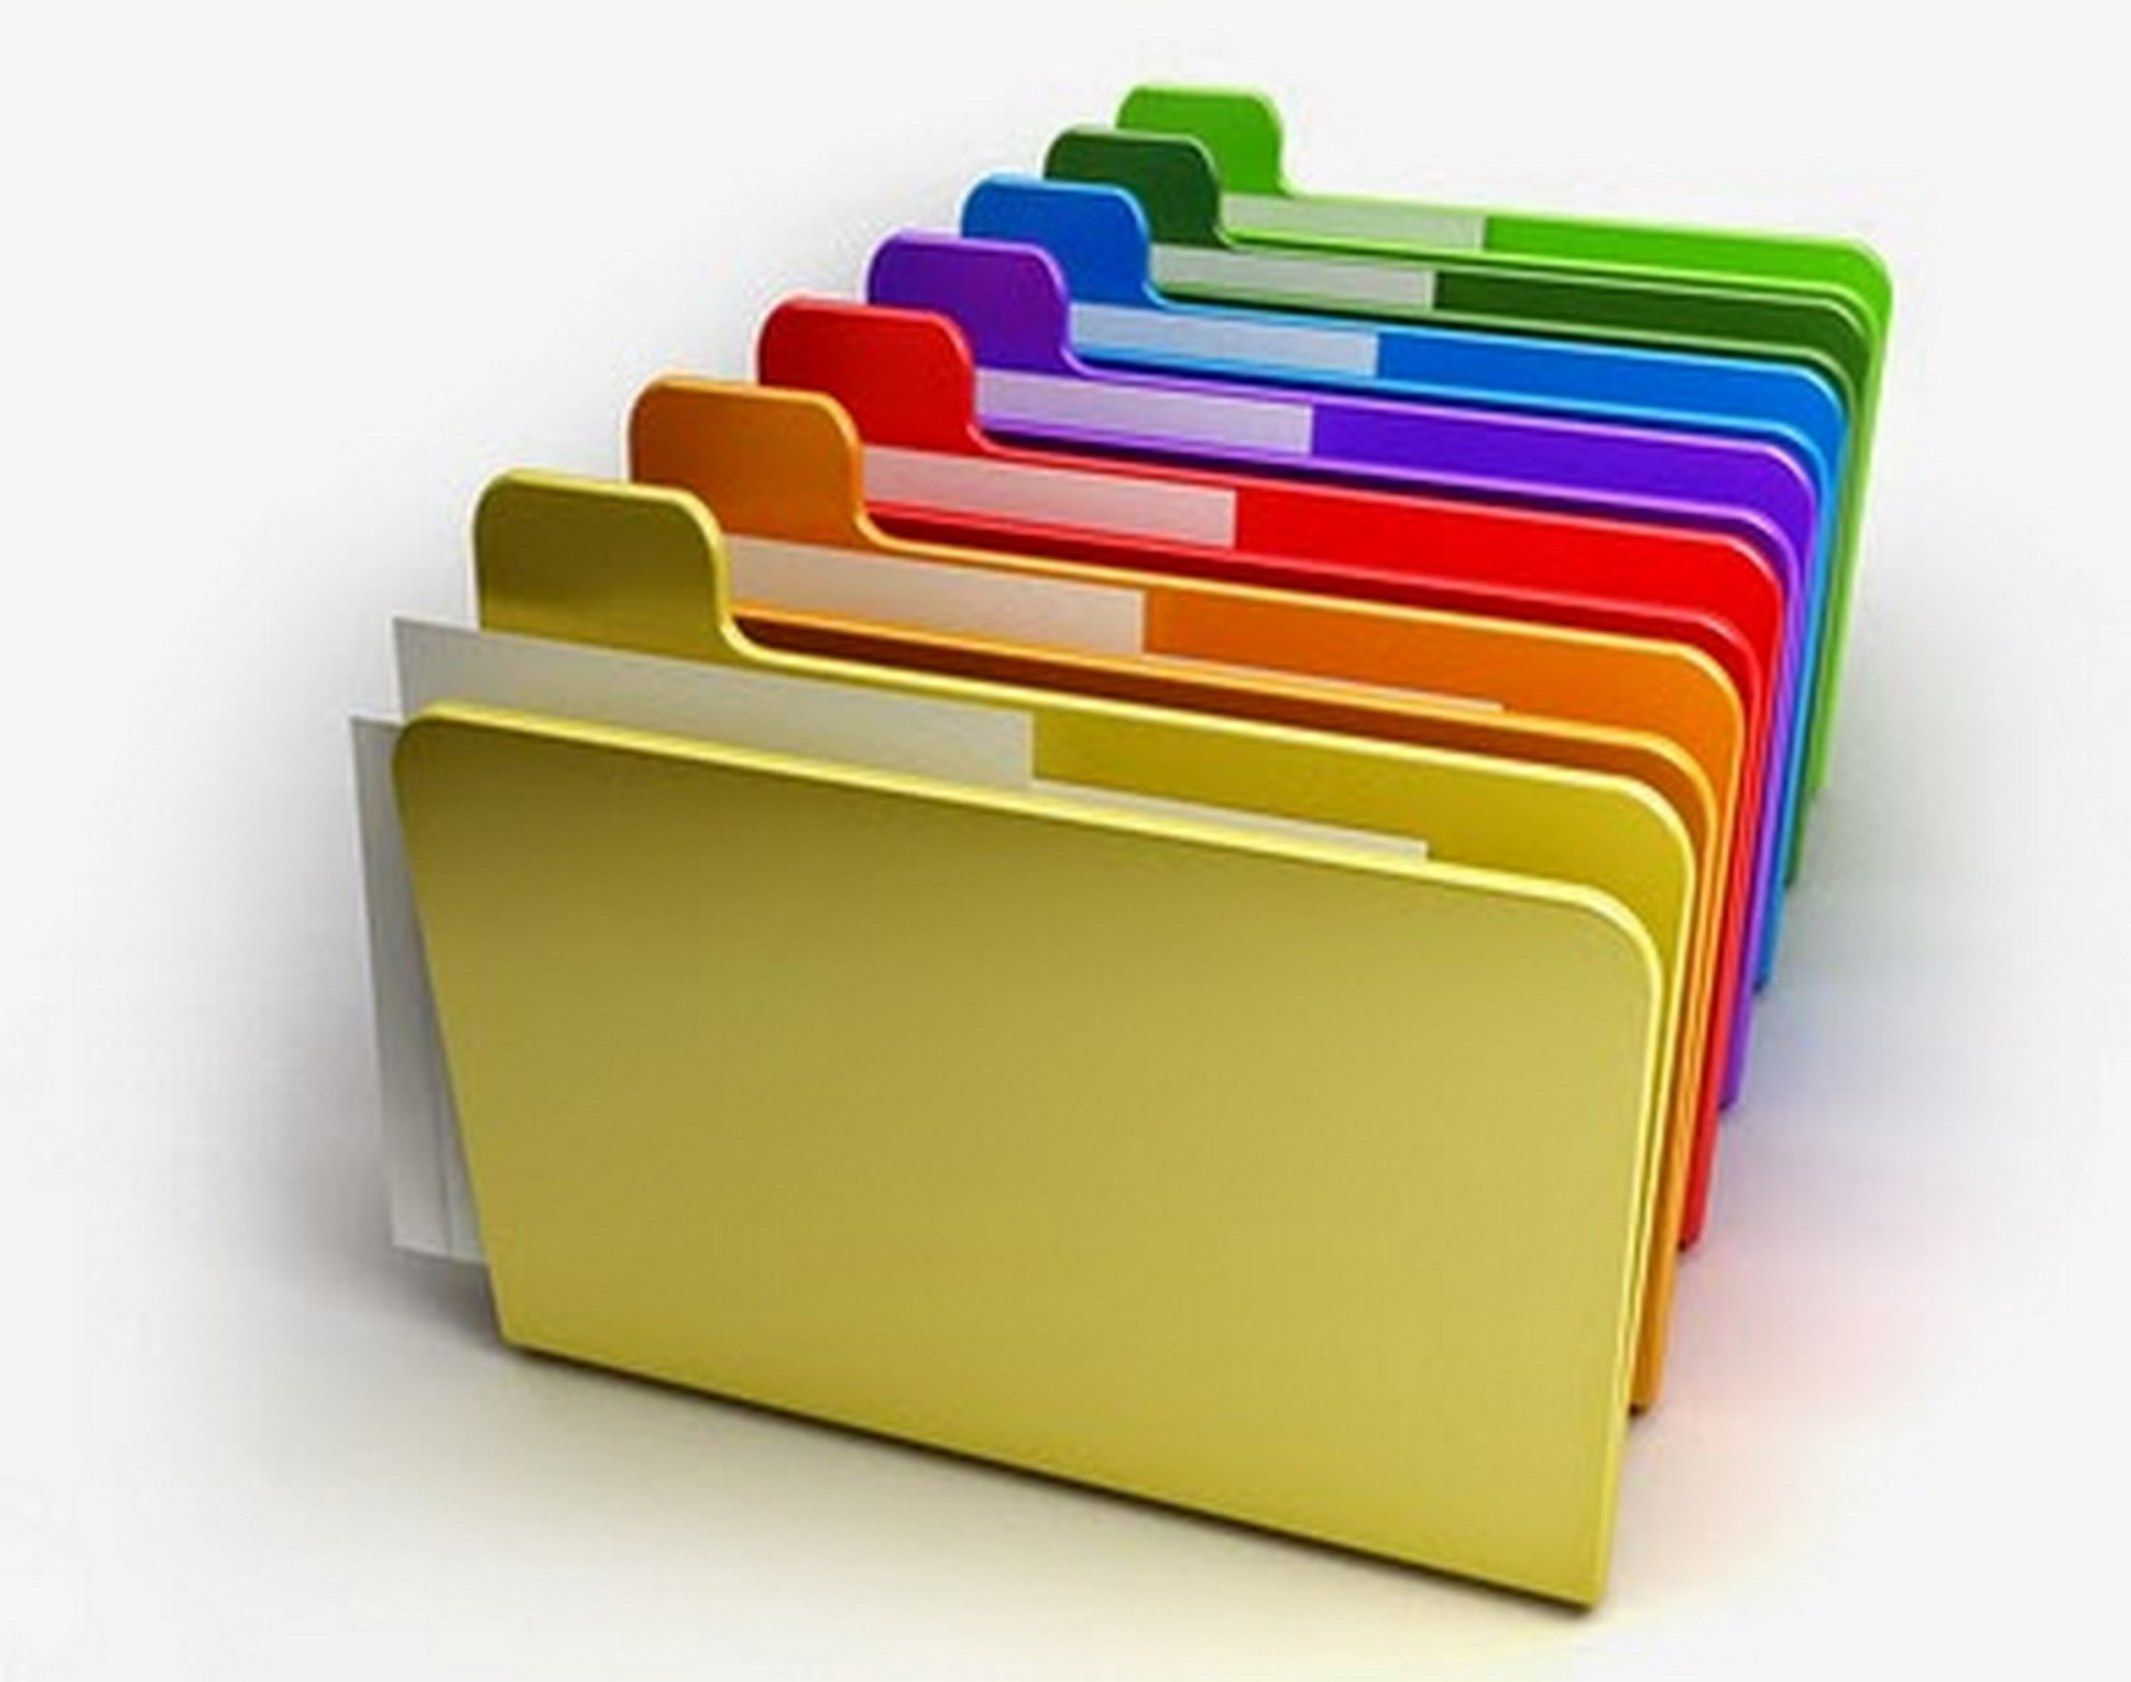 Folder library. Папка для документов. Стопка папок. Стопка папок с документами. Разноцветные папки.